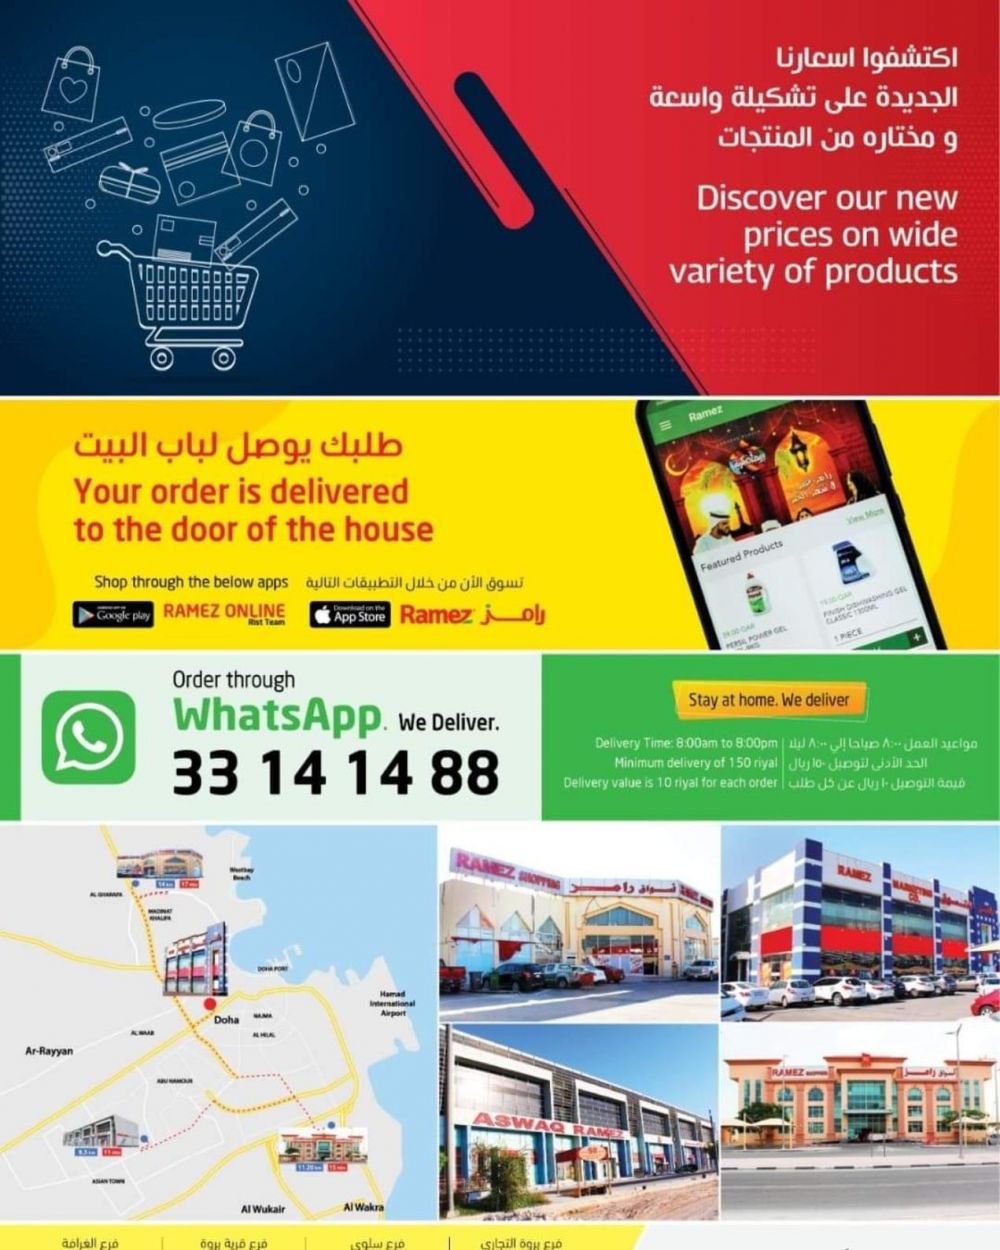 Aswaq Ramez Qatar offers 2021